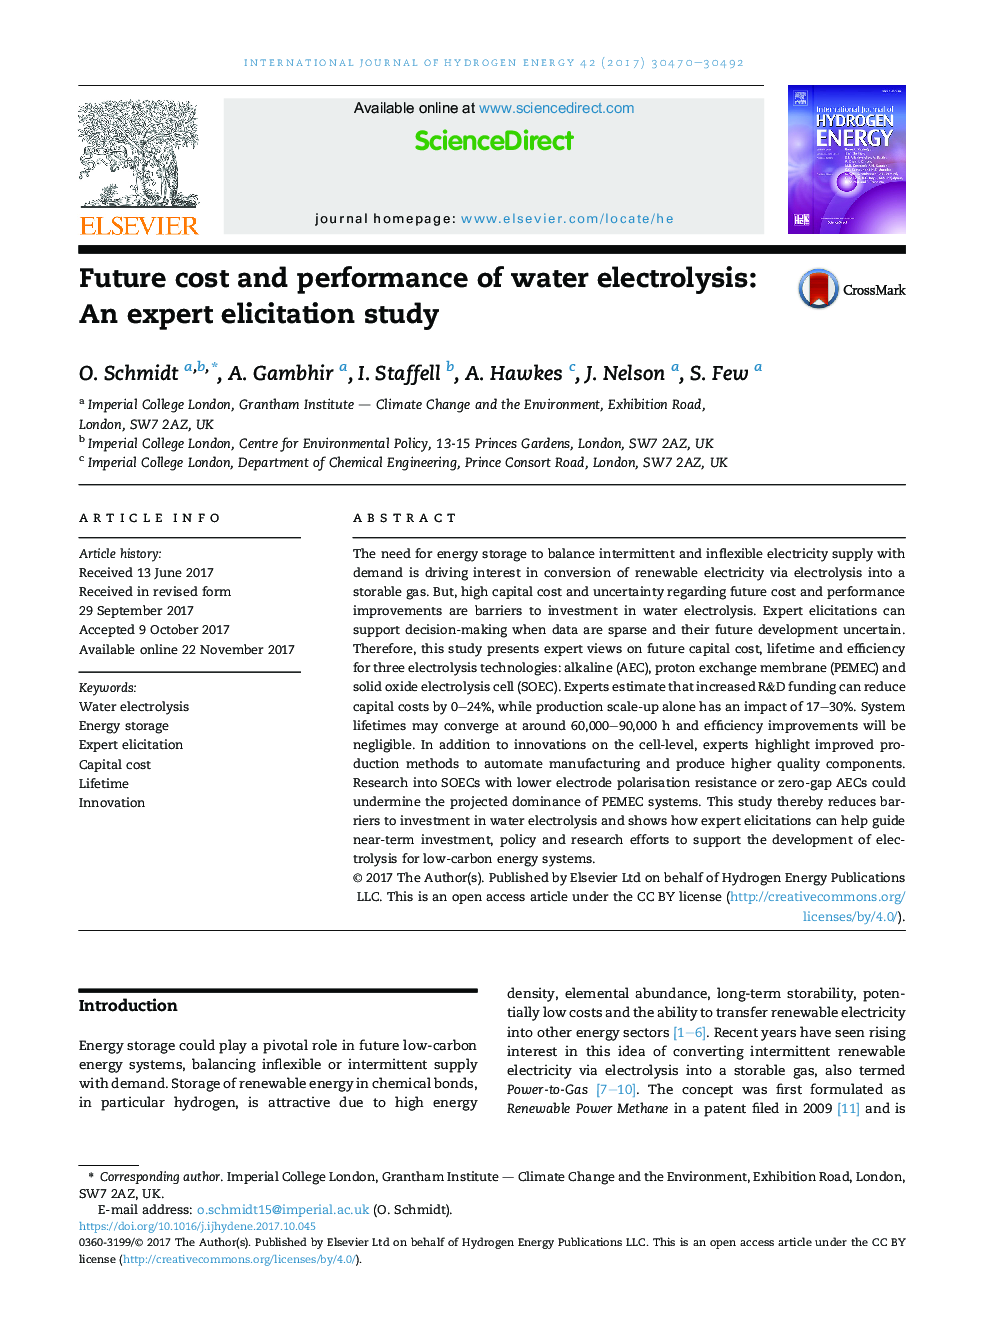 هزینه های آینده و عملکرد الکترولیز آب: یک مطالعه علمی کارشناس 